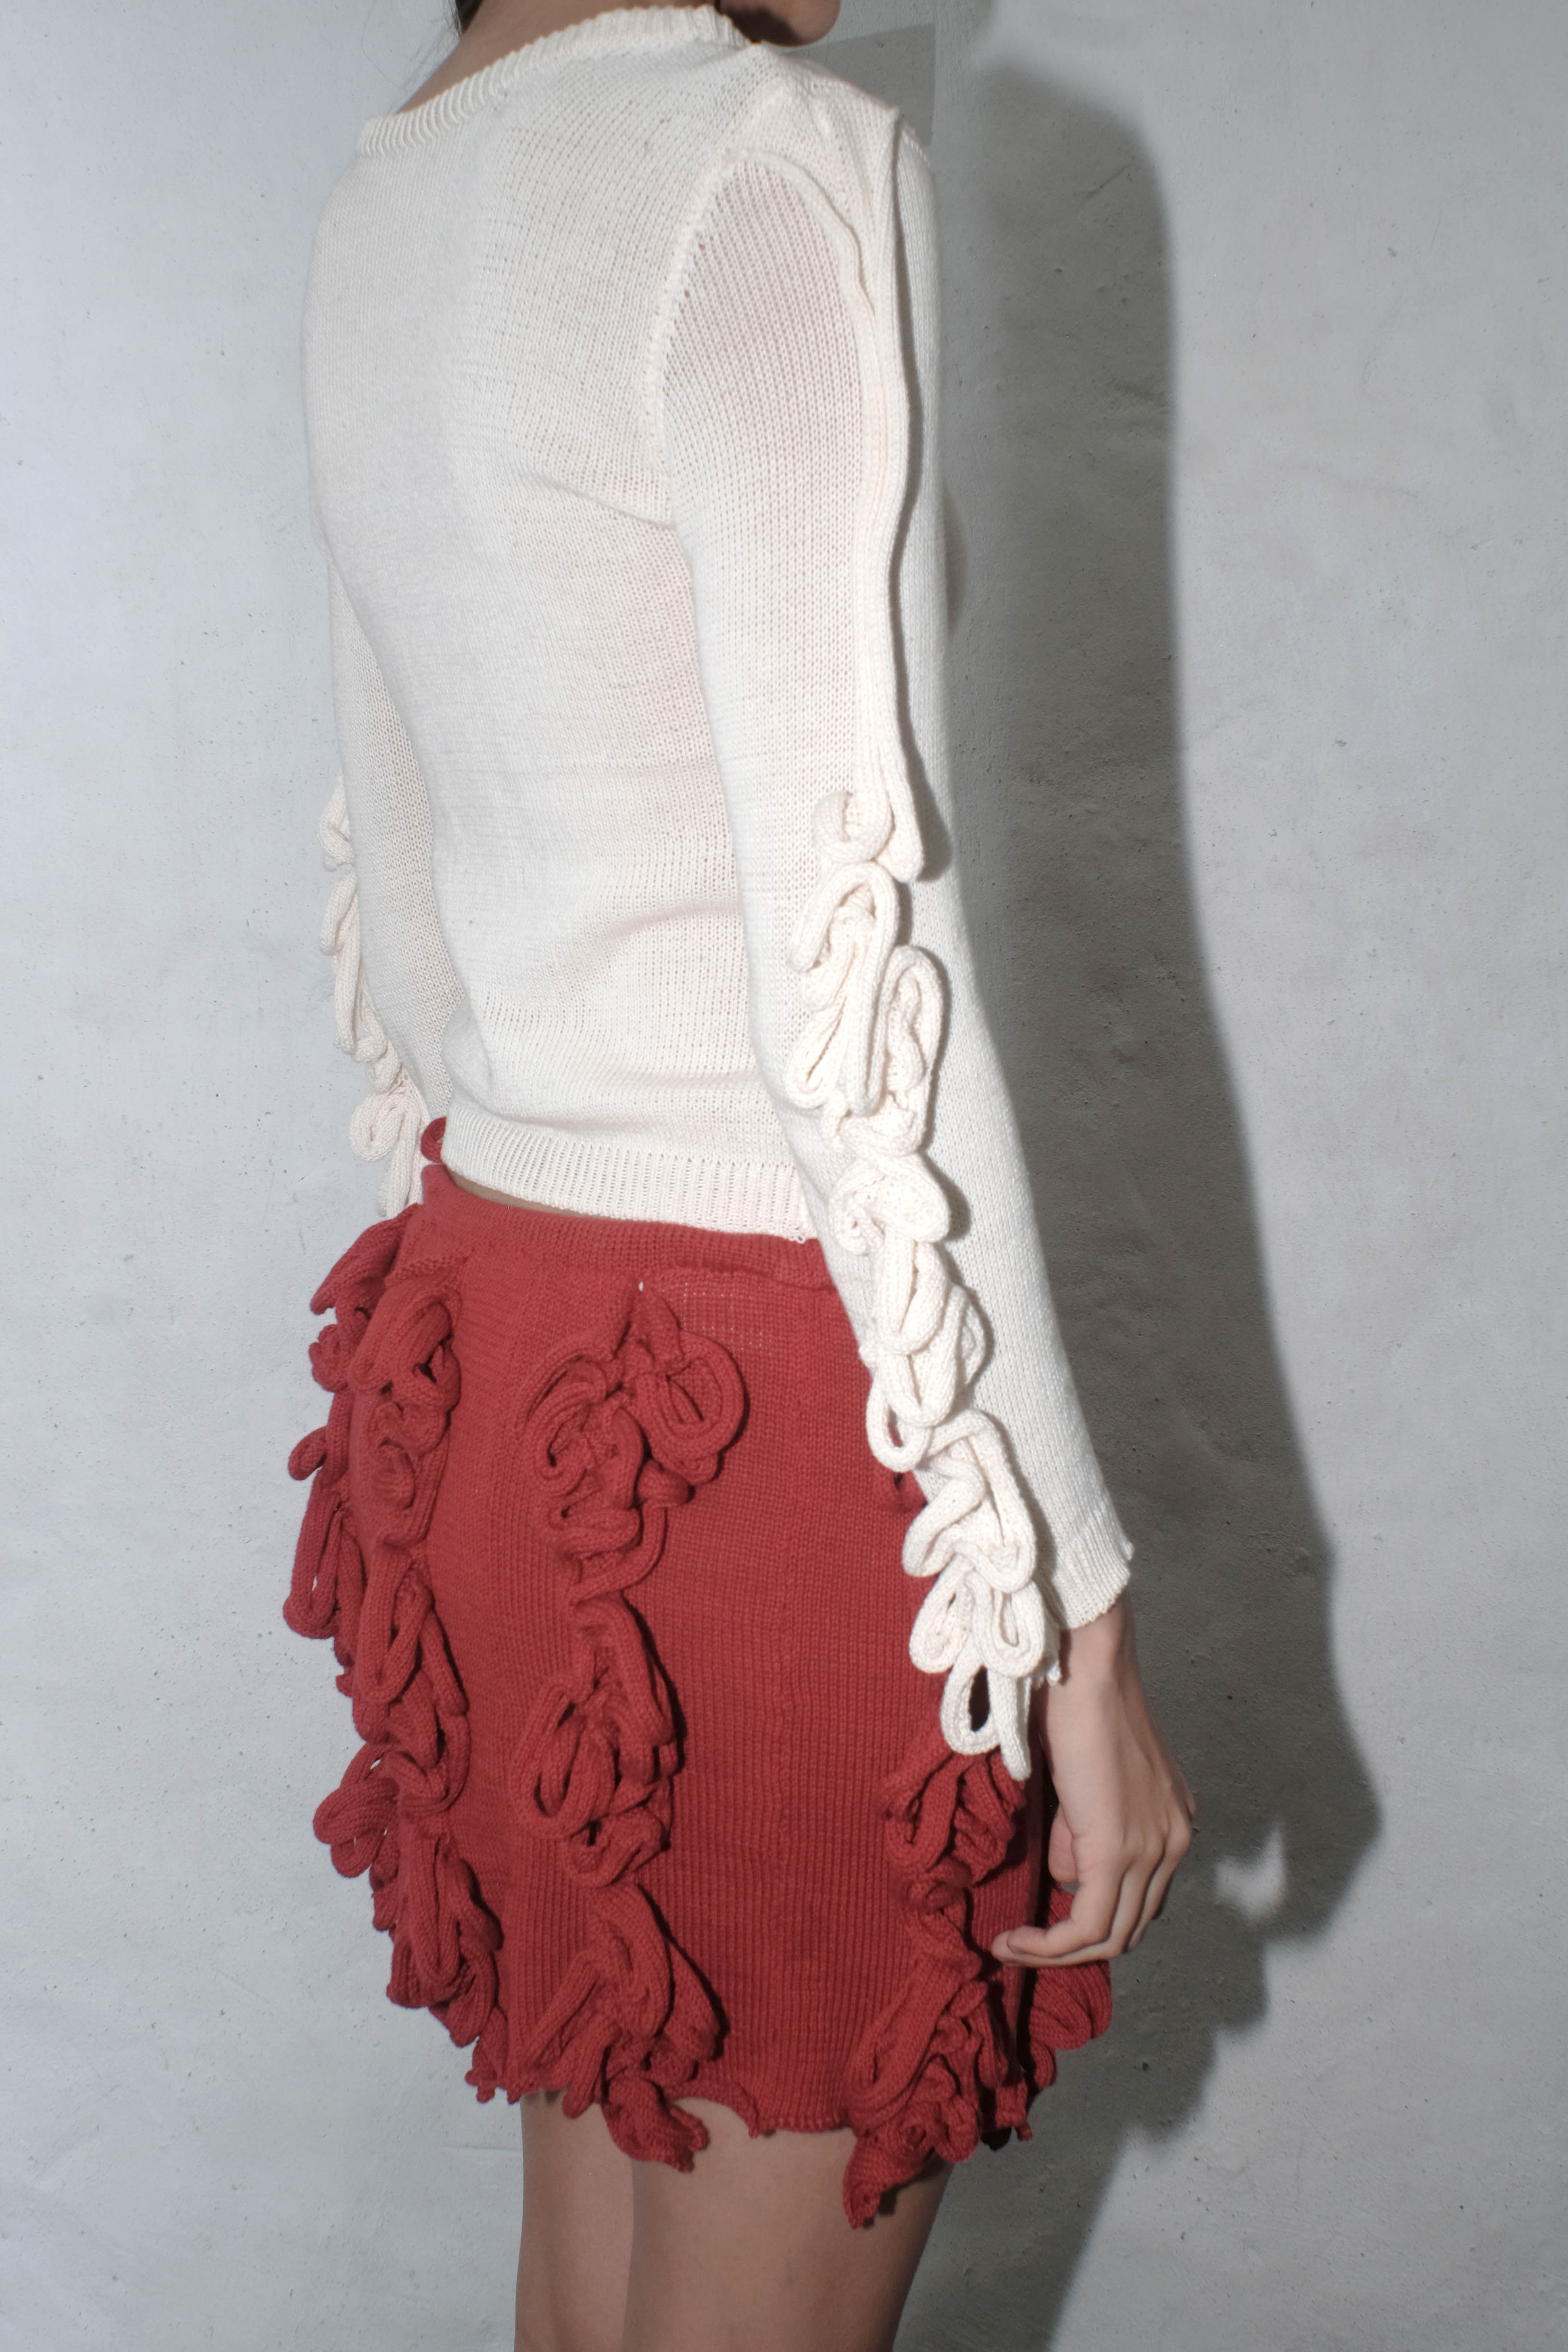 krystal paniagua longsleeve swiggle top knitwear